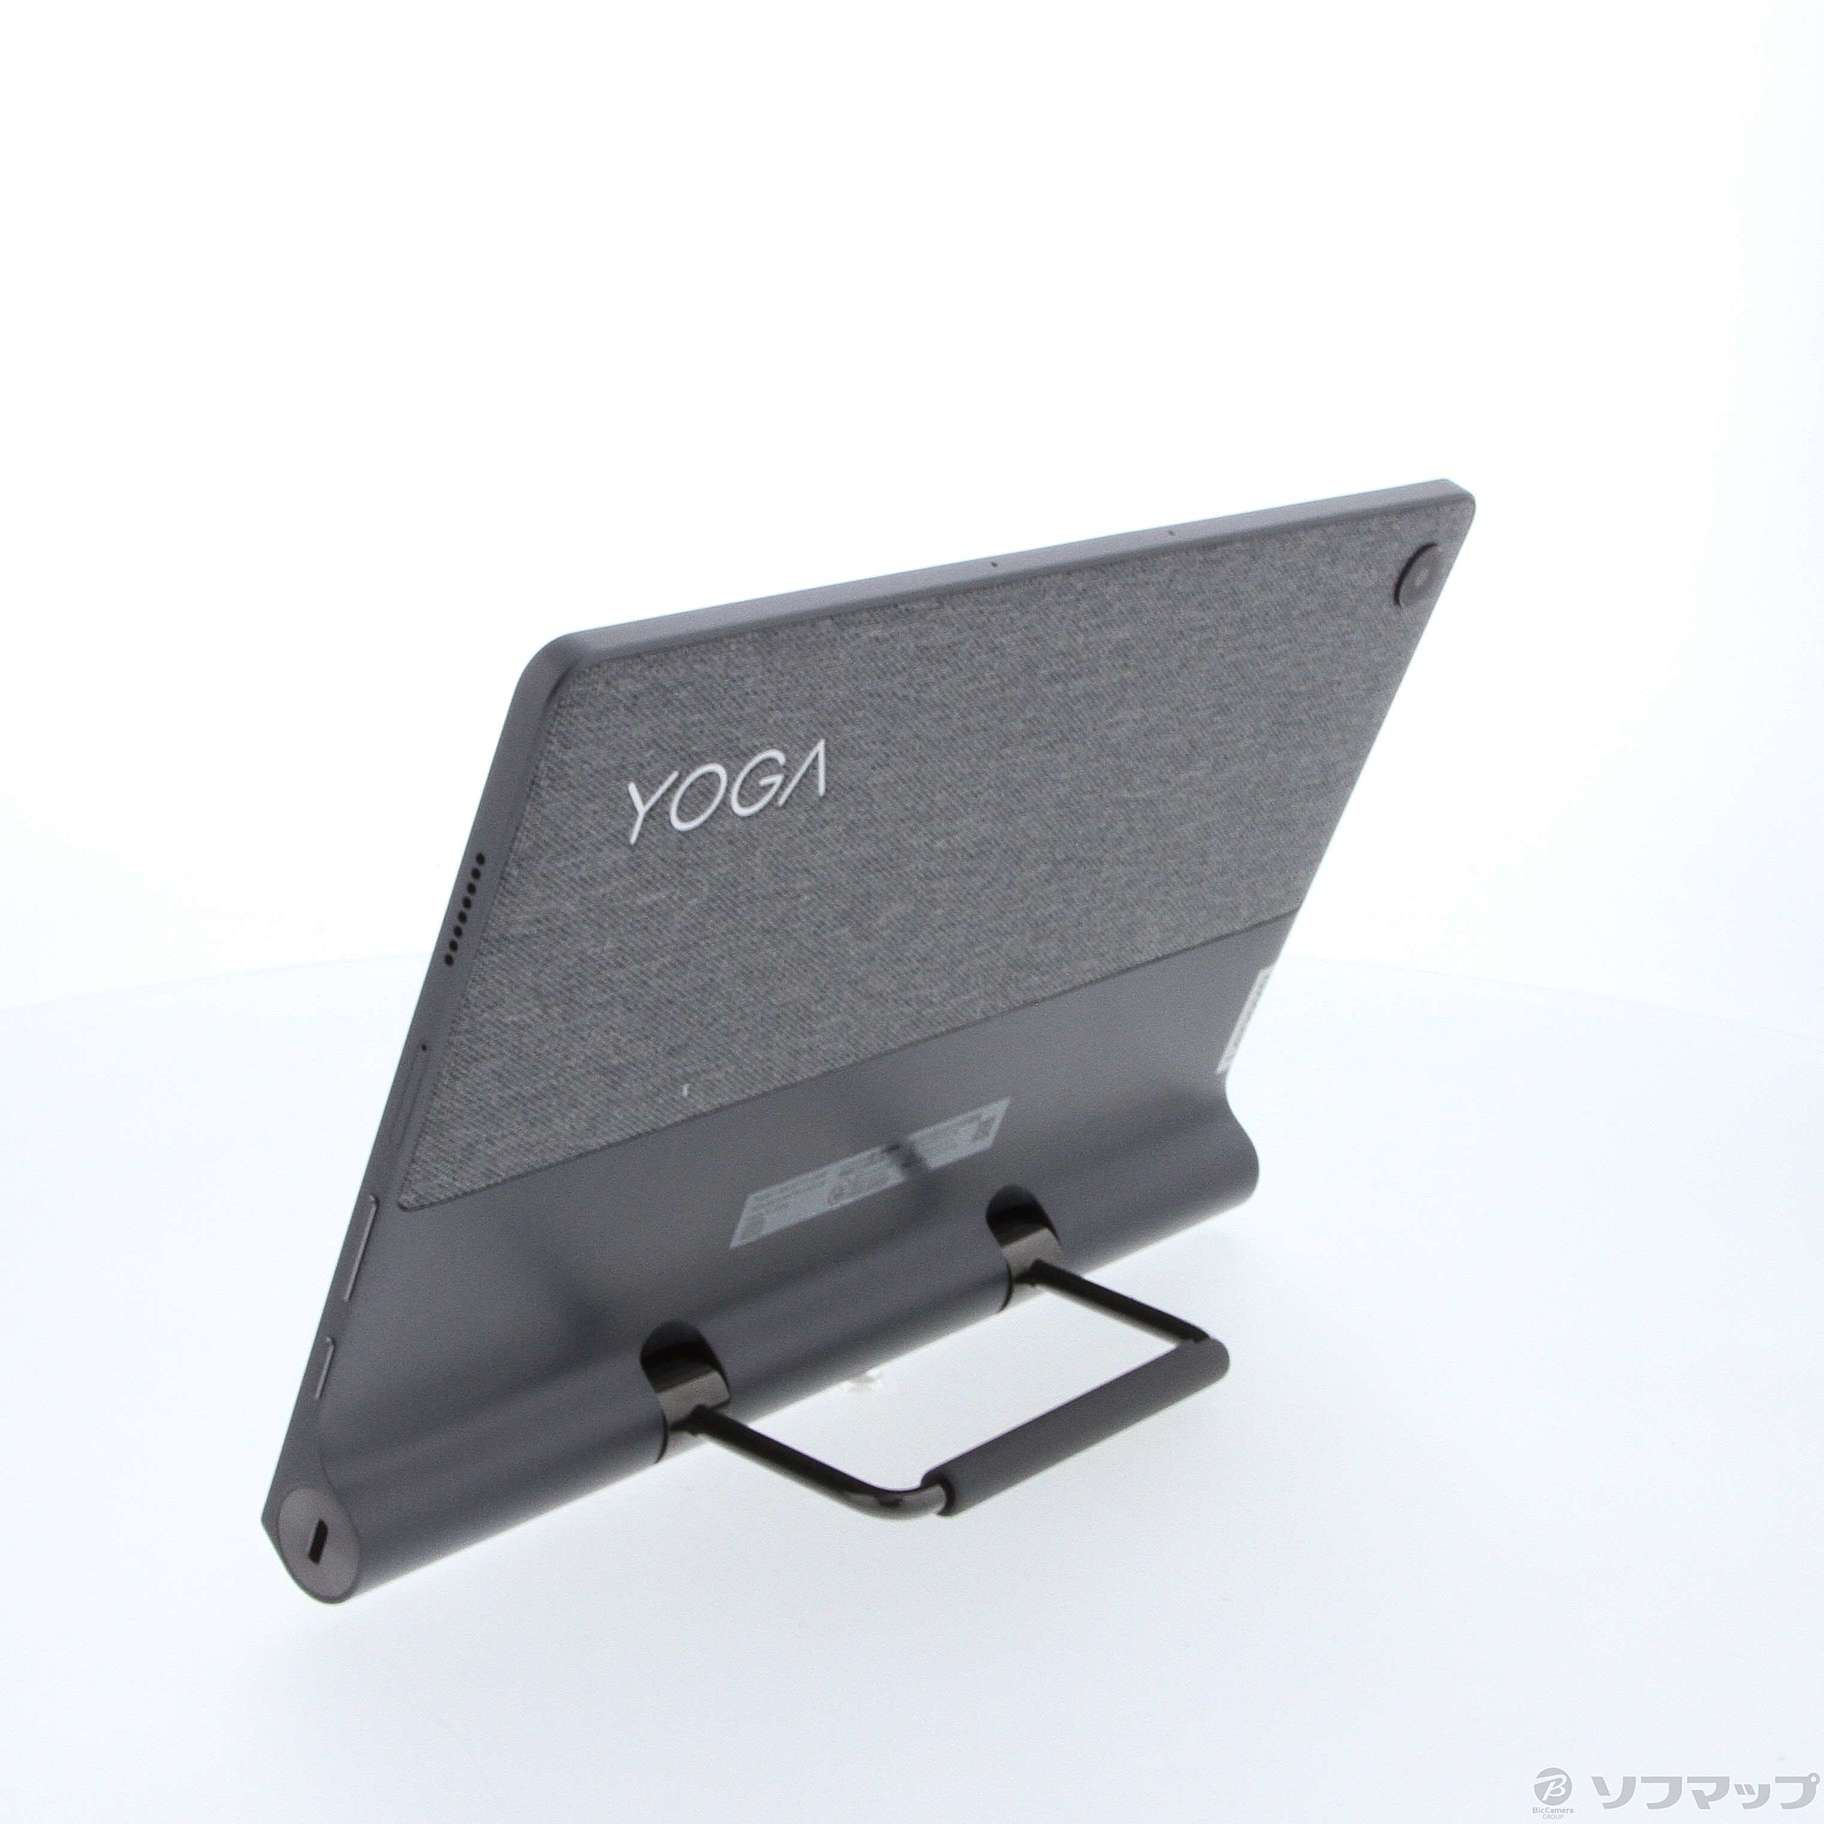 中古】〔展示品〕 Lenovo Yoga Tab 11 128GB ストームグレー